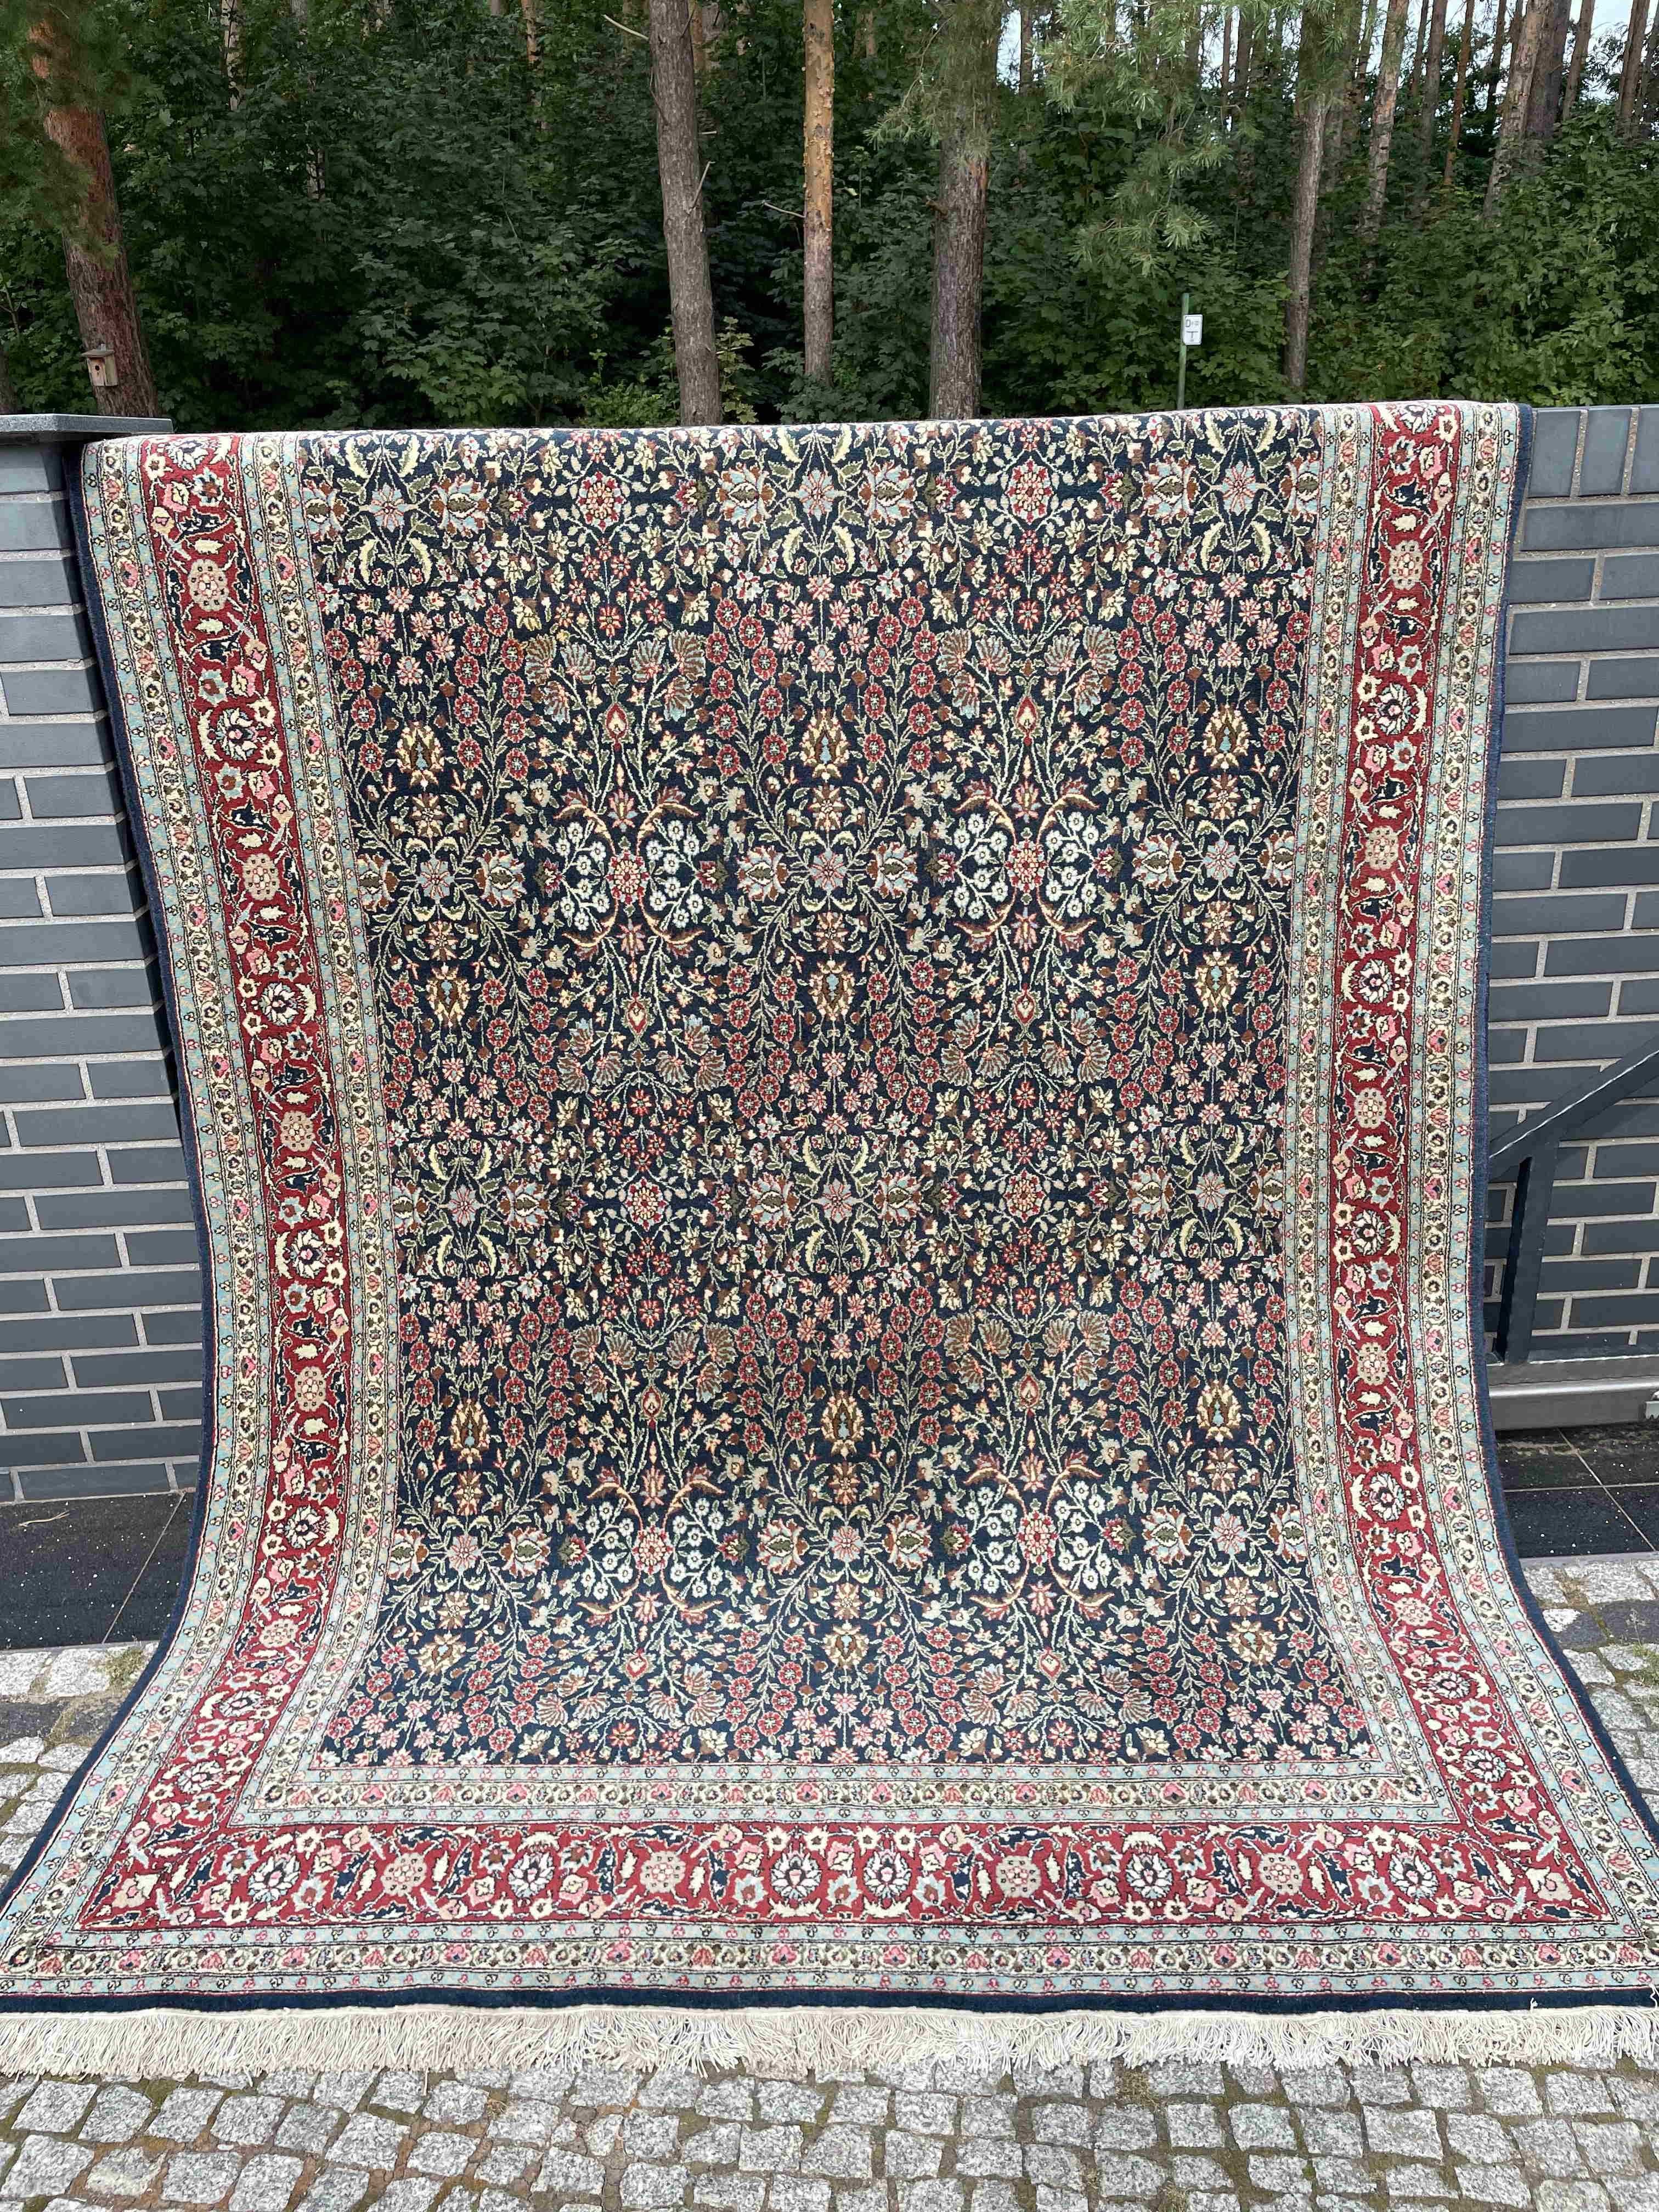 Prawdziwy dywan turecki Hereke 300x200 galeria 25 tys